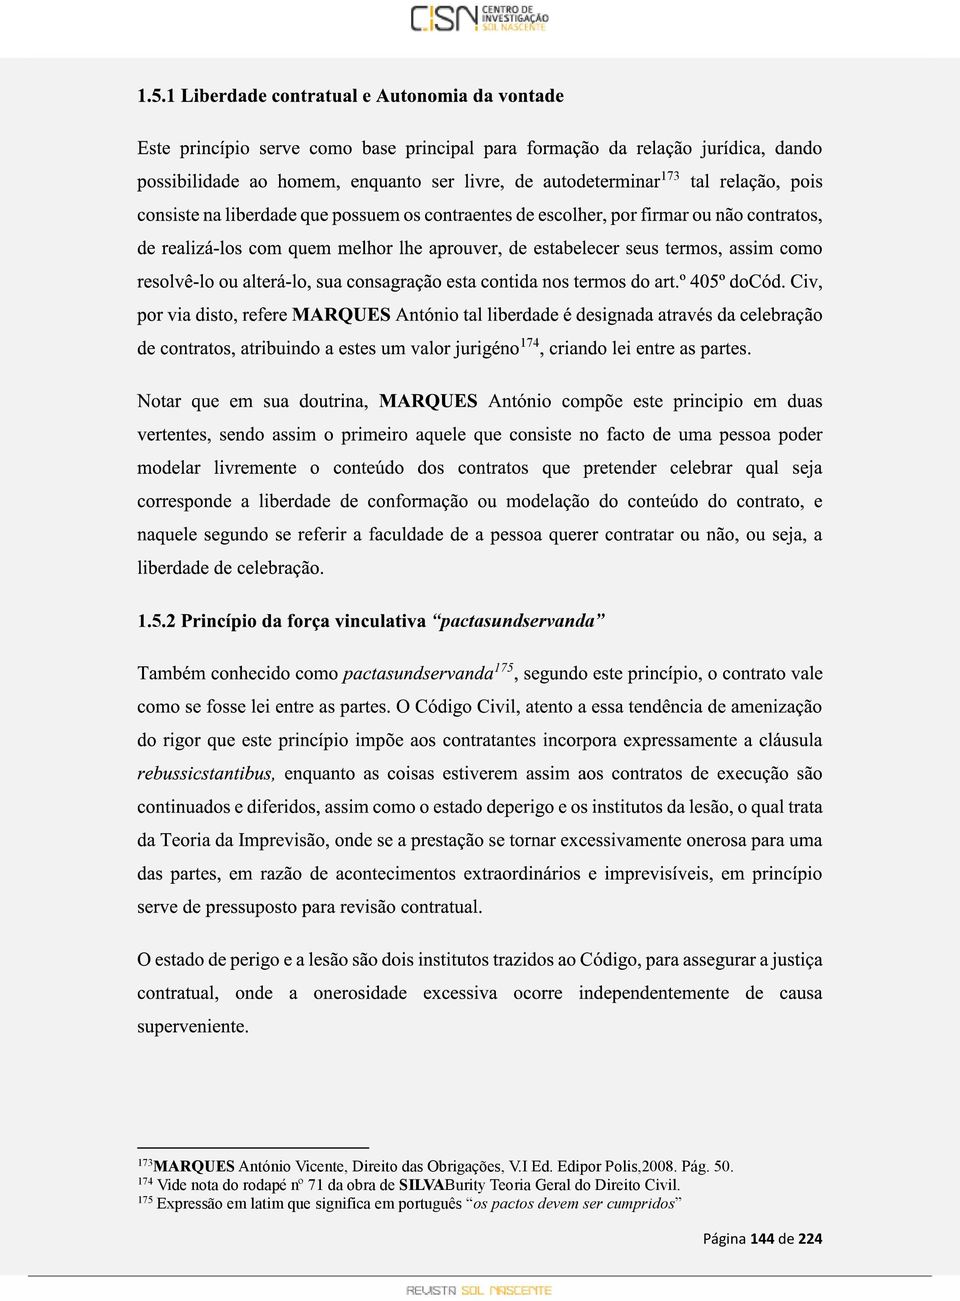 Obrigações, V.I Ed. Edipor Polis,2008. Pág. 50.